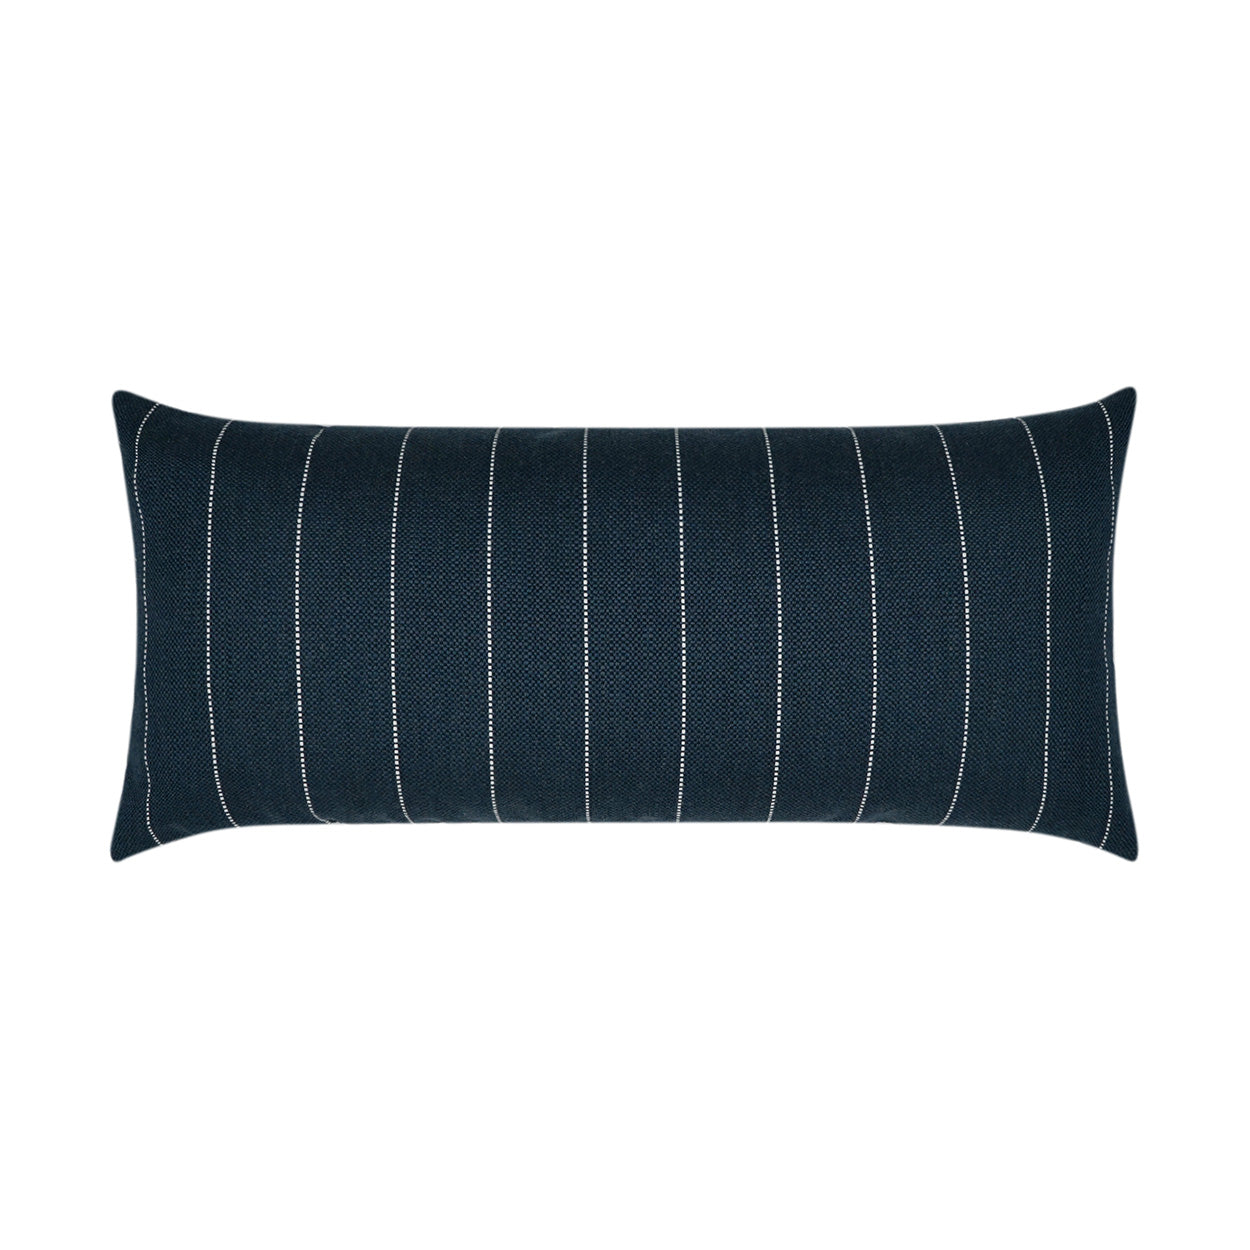 Outdoor Malibu Lumbar Pillow - Indigo